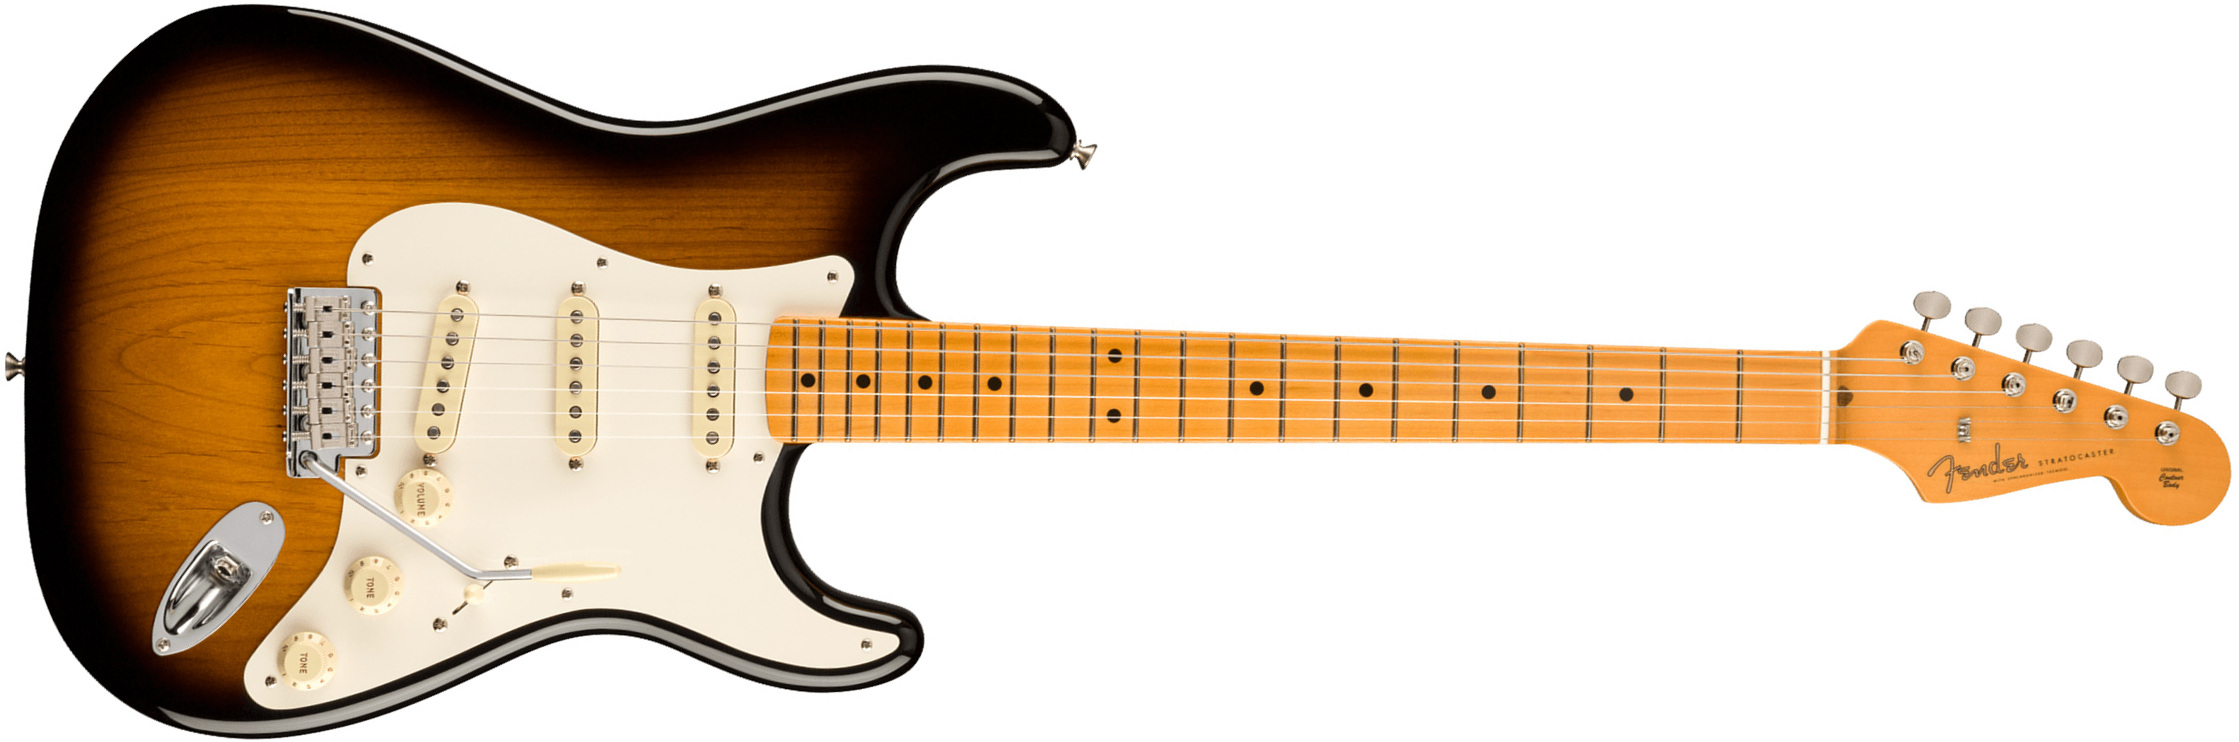 Fender Strat 1957 American Vintage Ii Usa 3s Trem Mn - 2-color Sunburst - Str shape electric guitar - Main picture